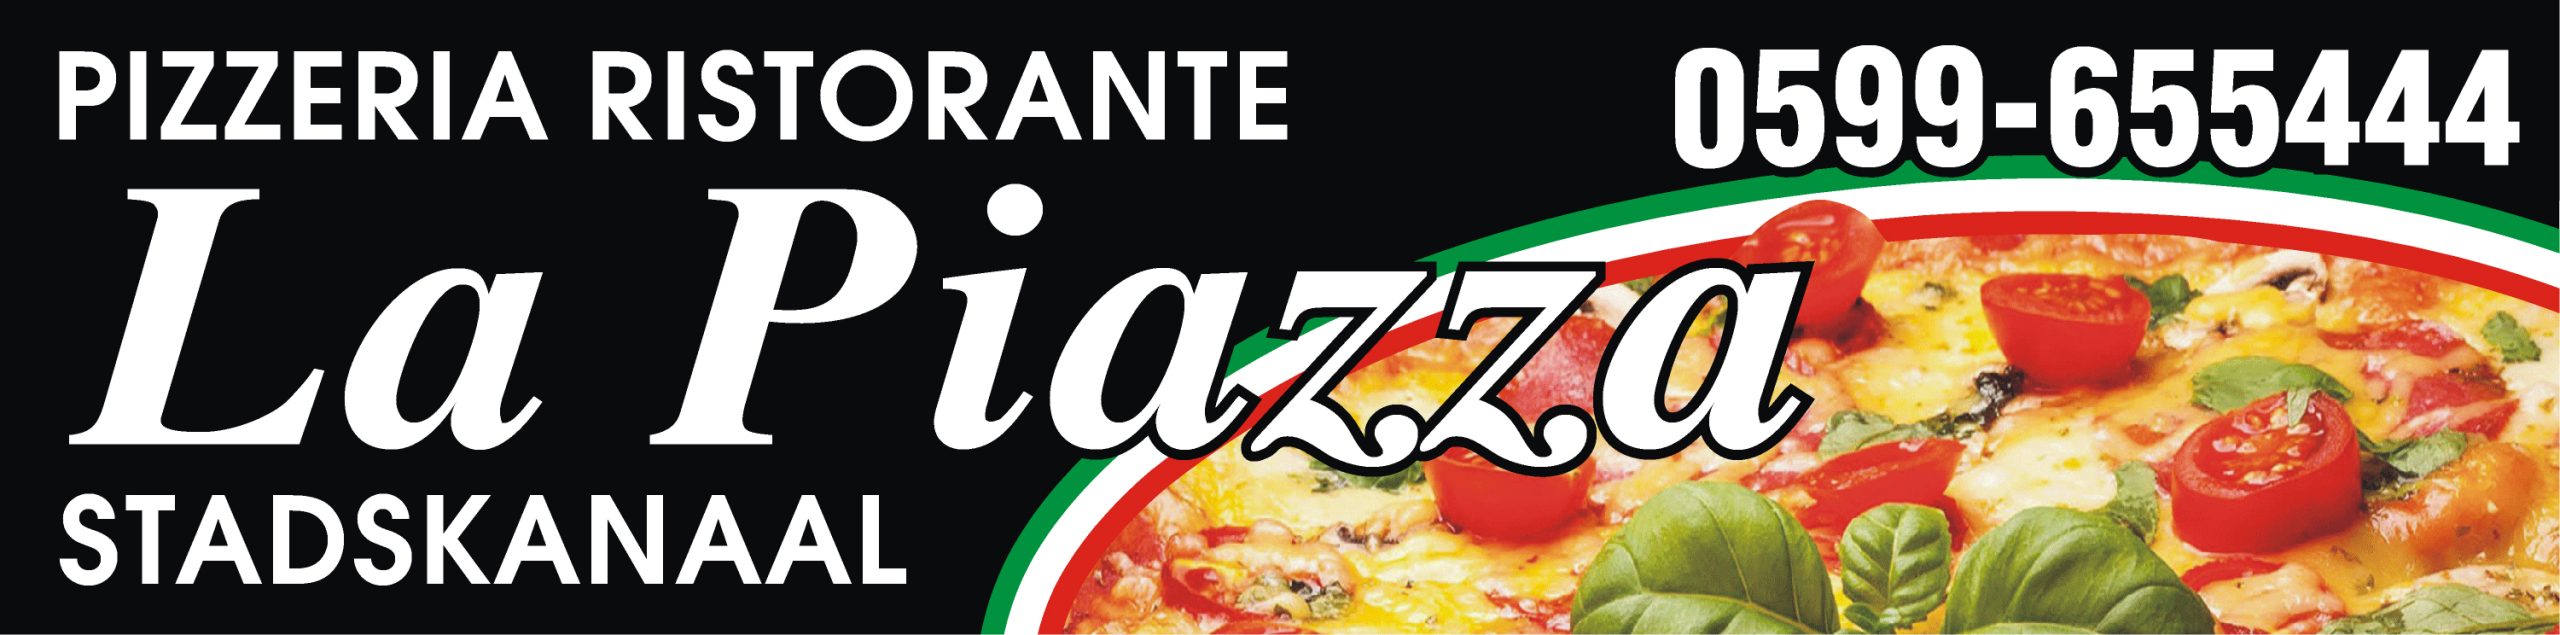 Pizzeria Ristorante La Piazza